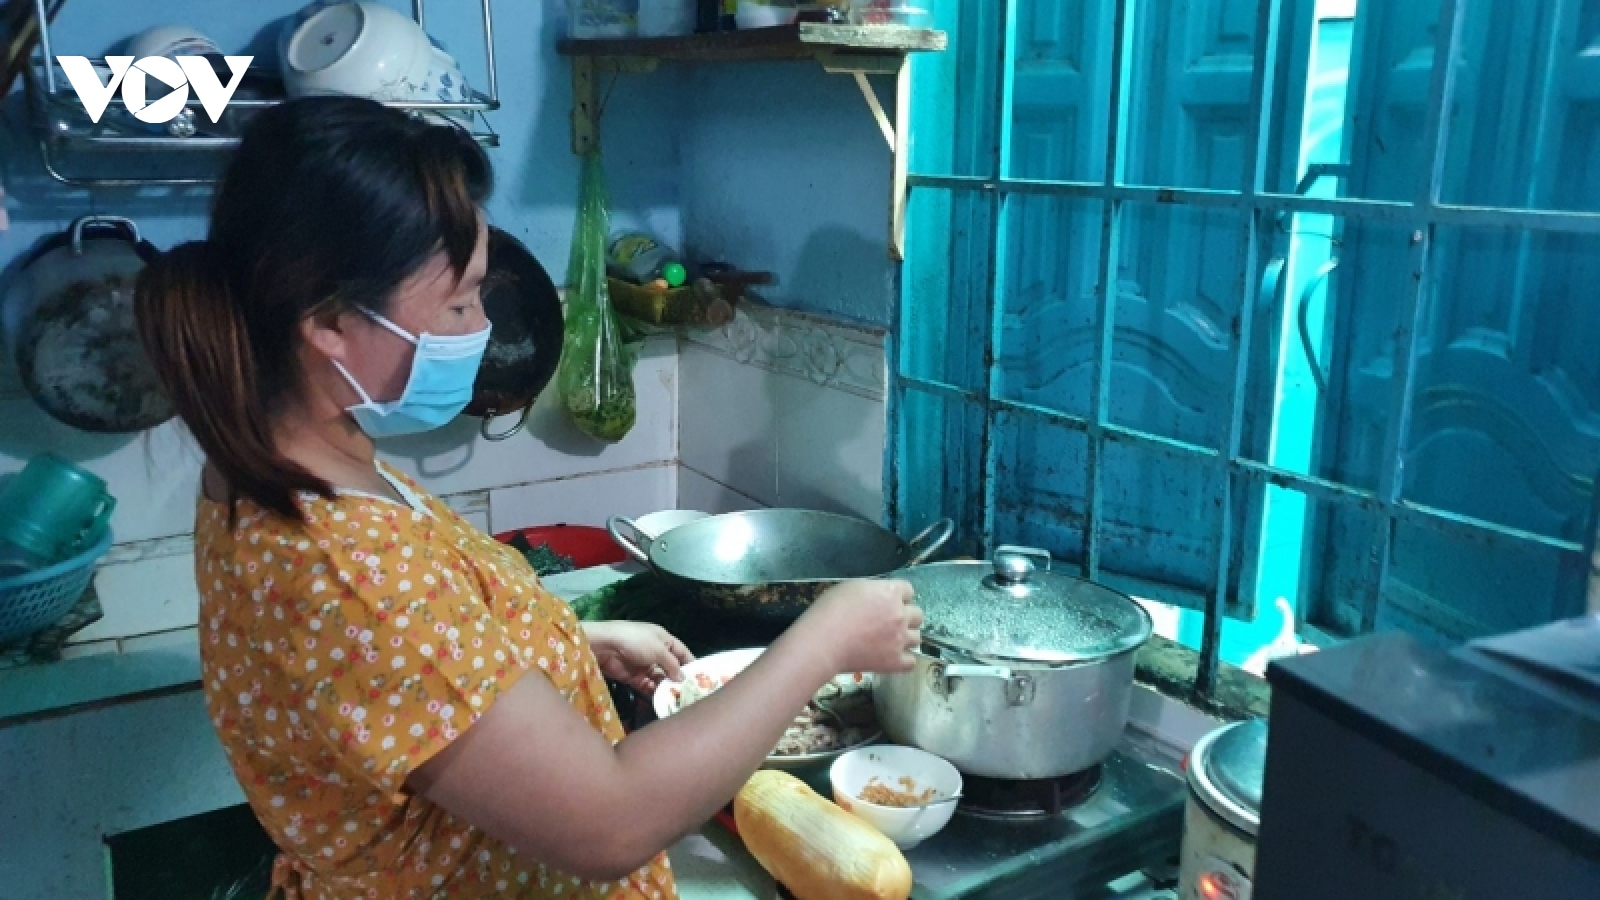 Phần lớn công nhân ở Đồng Nai phải sống trọ tạm bợ